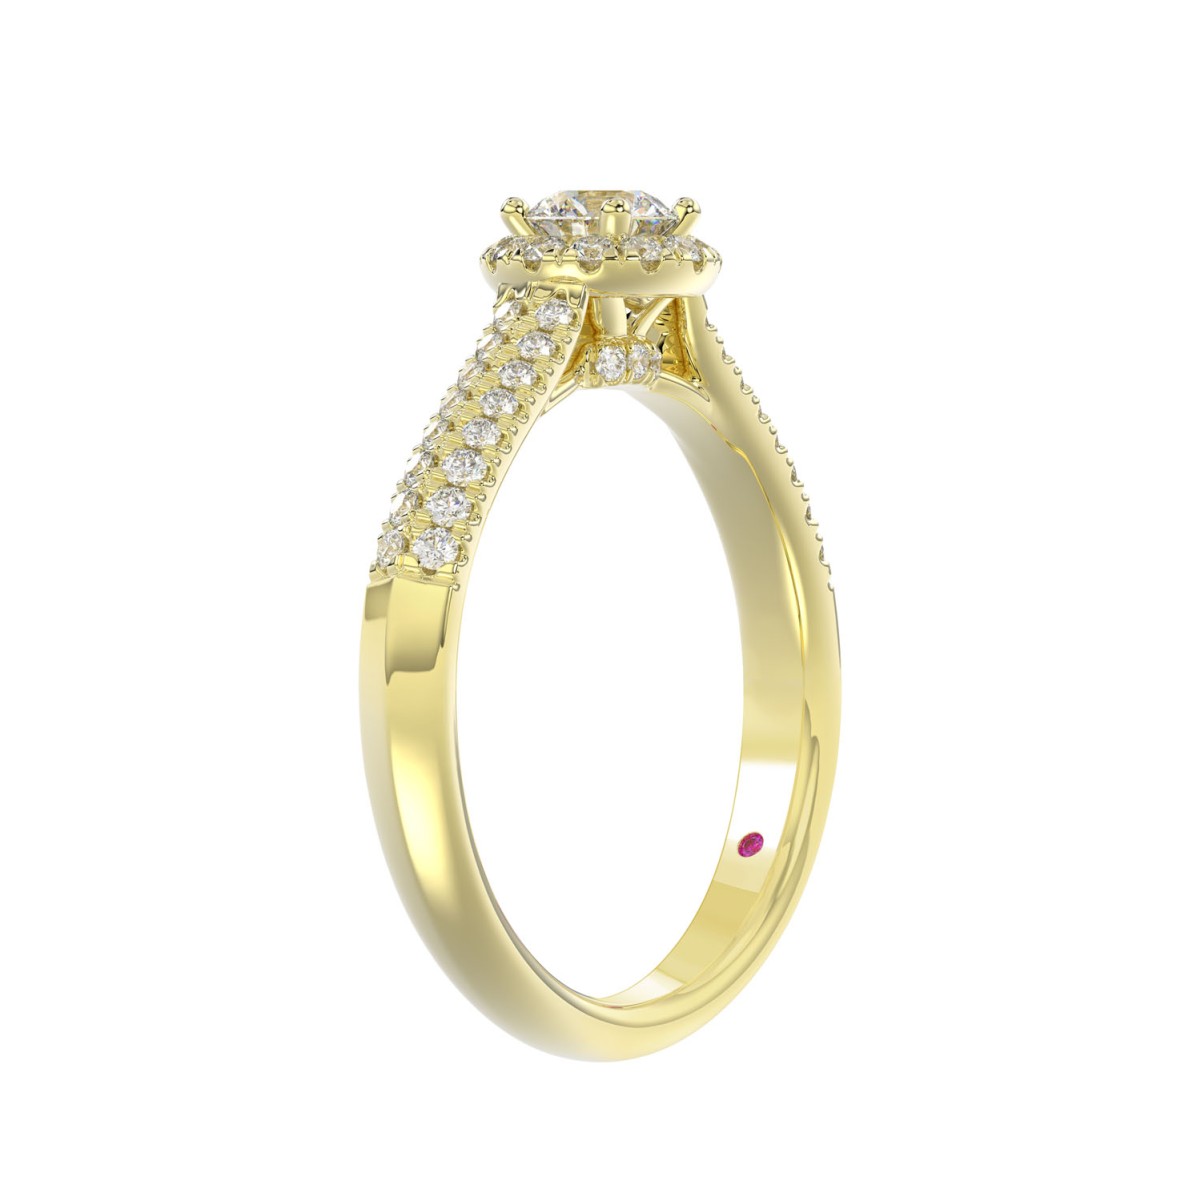 14K YELLOW GOLD 5/8CT ROUND DIAMOND LADIES RING(CENTER STONE ROUND DIAMOND 1/4CT)